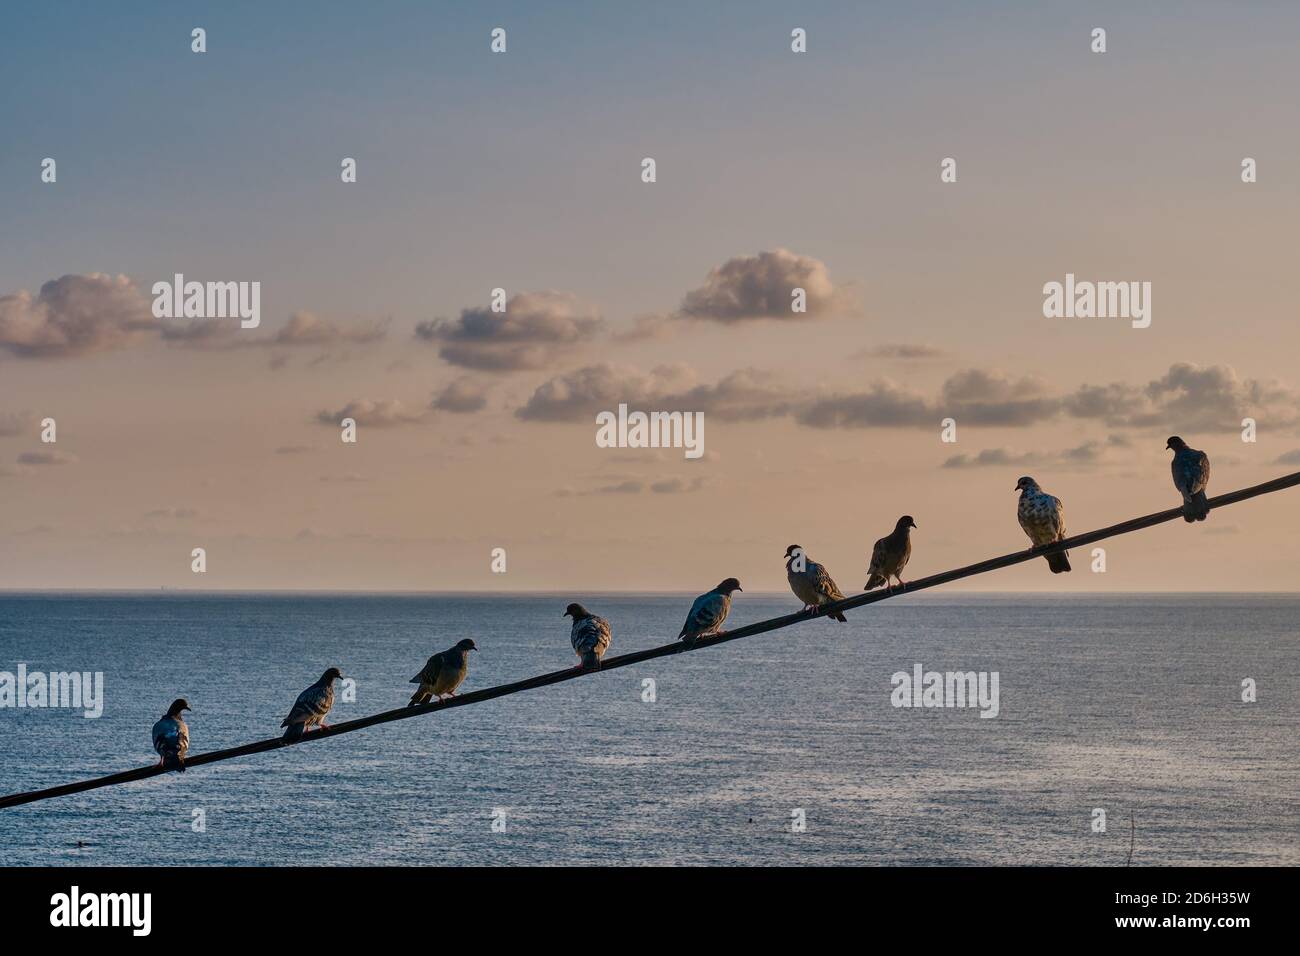 Tauben sitzen in einer Reihe auf einem Draht über dem Hintergrund des Meeres und der Sonnenuntergang Himmel mit Wolken. Meereslandschaft. Stockfoto